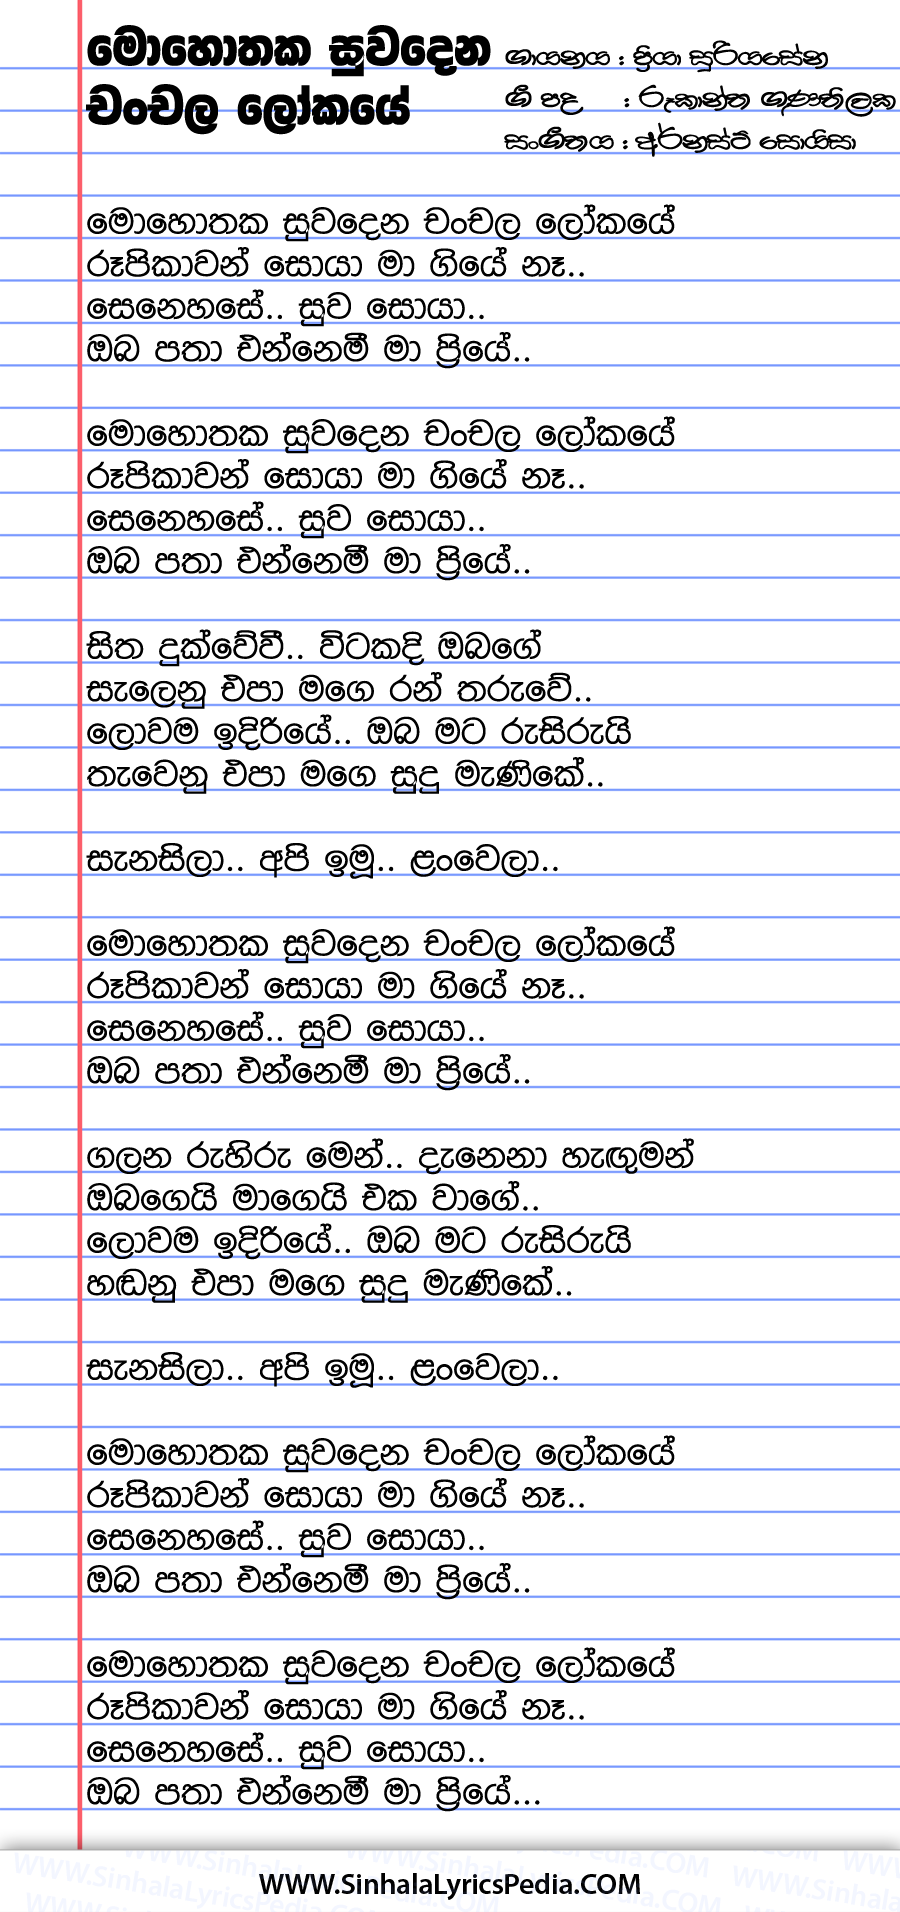 Mohothaka Suwa Dena Chanchala Lokaye Song Lyrics